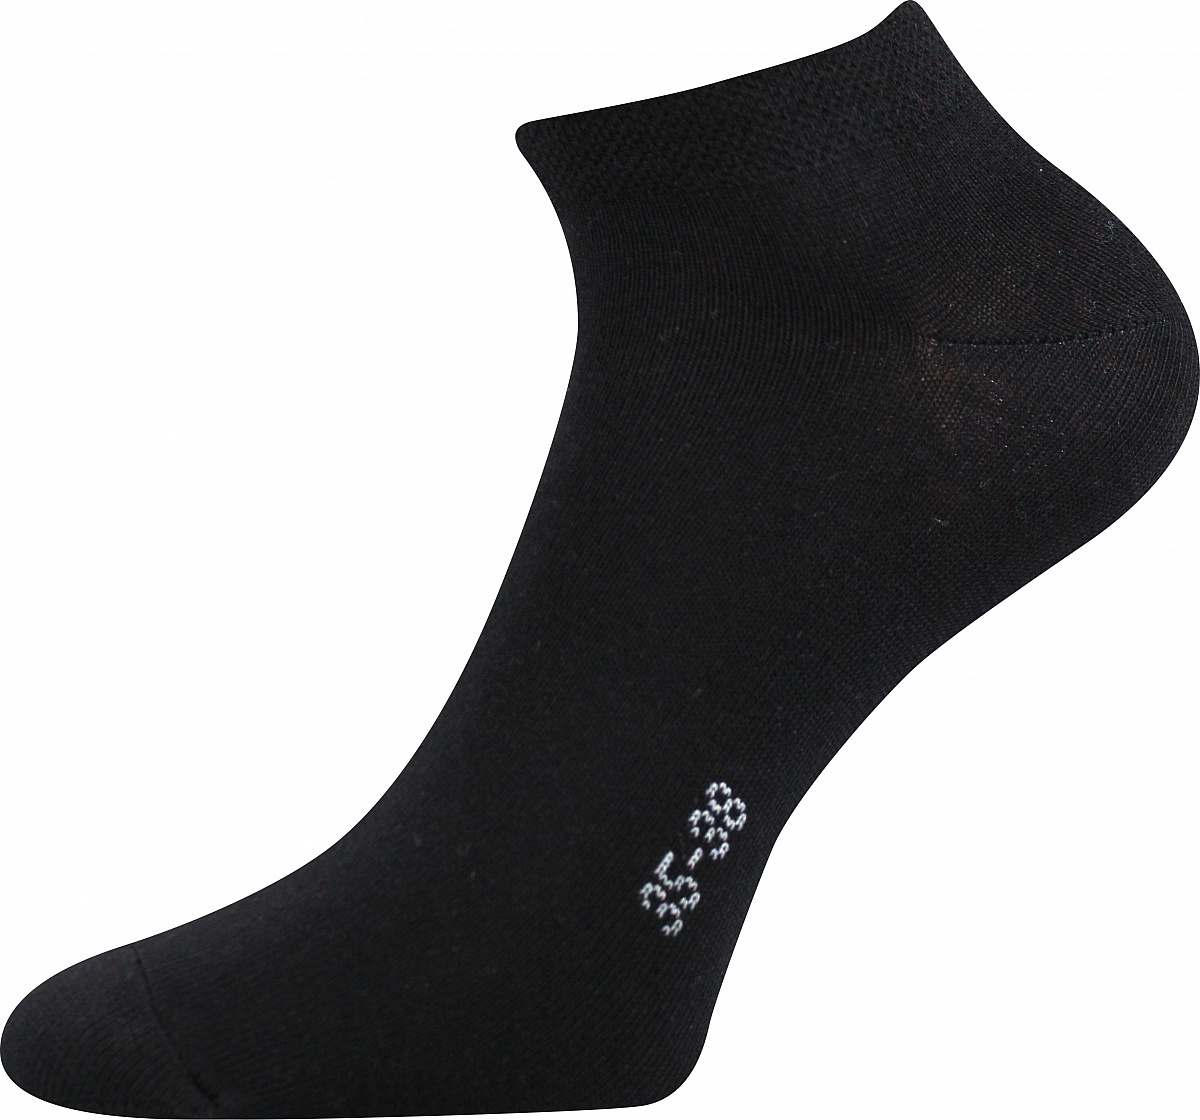 Ponožky Boma Hoho - černé